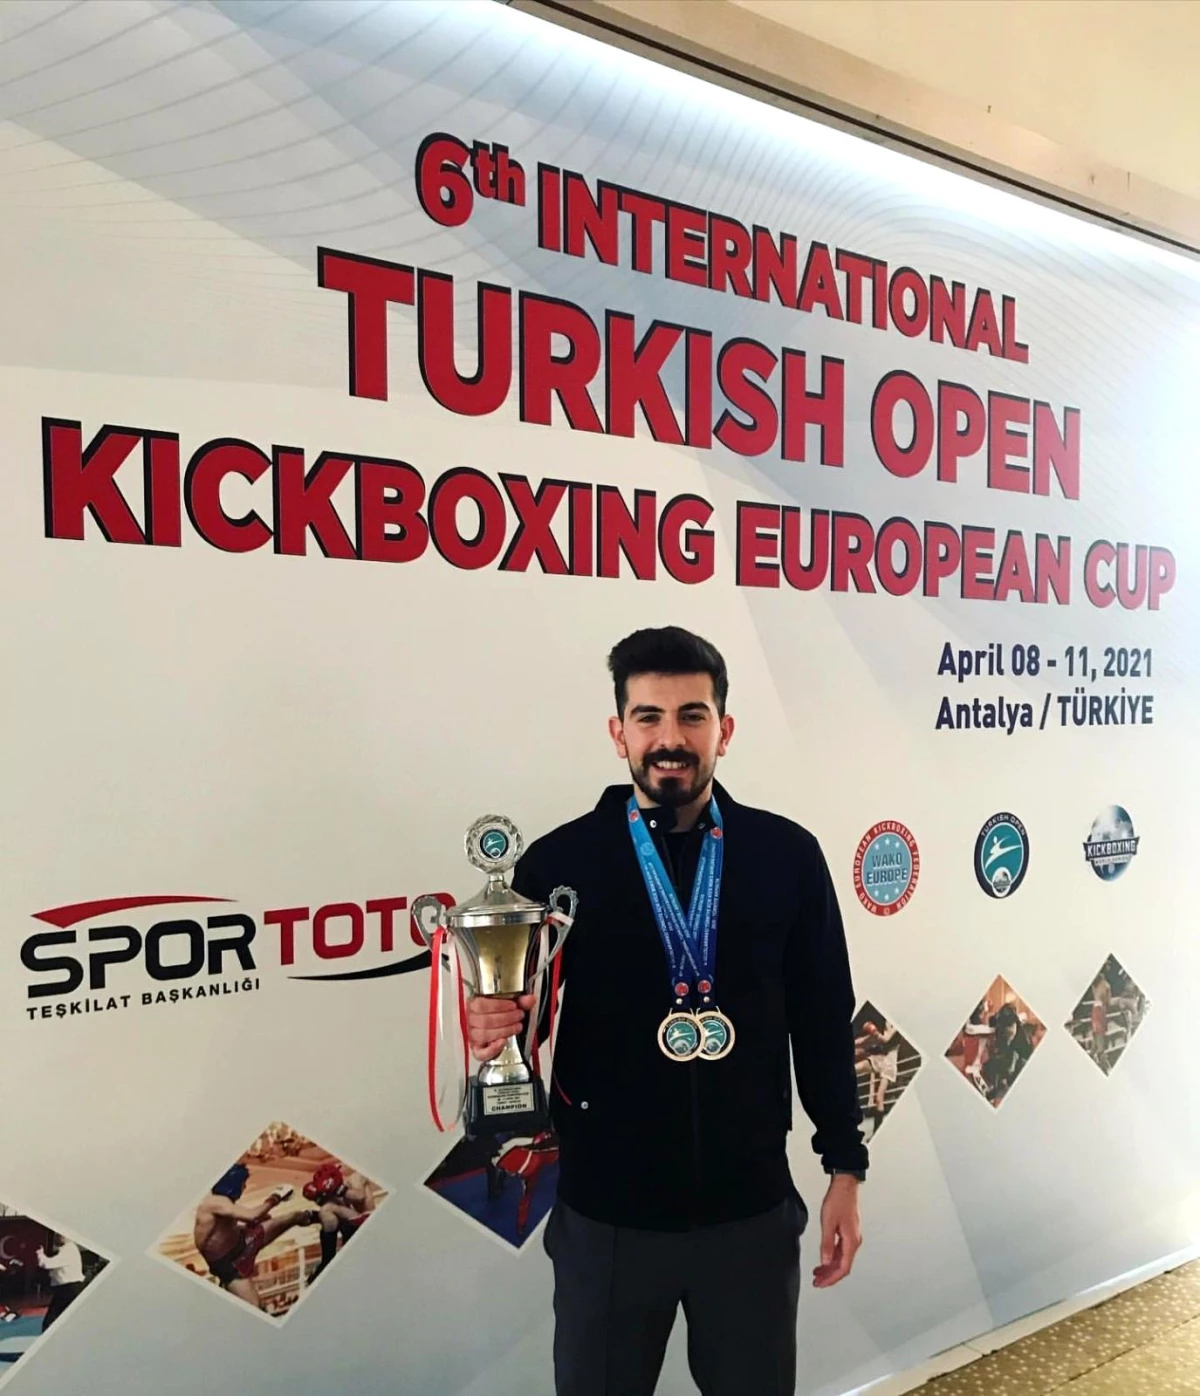 6\'ncı Uluslararası Türkiye Kick Boks Avrupa Kupası son buldu